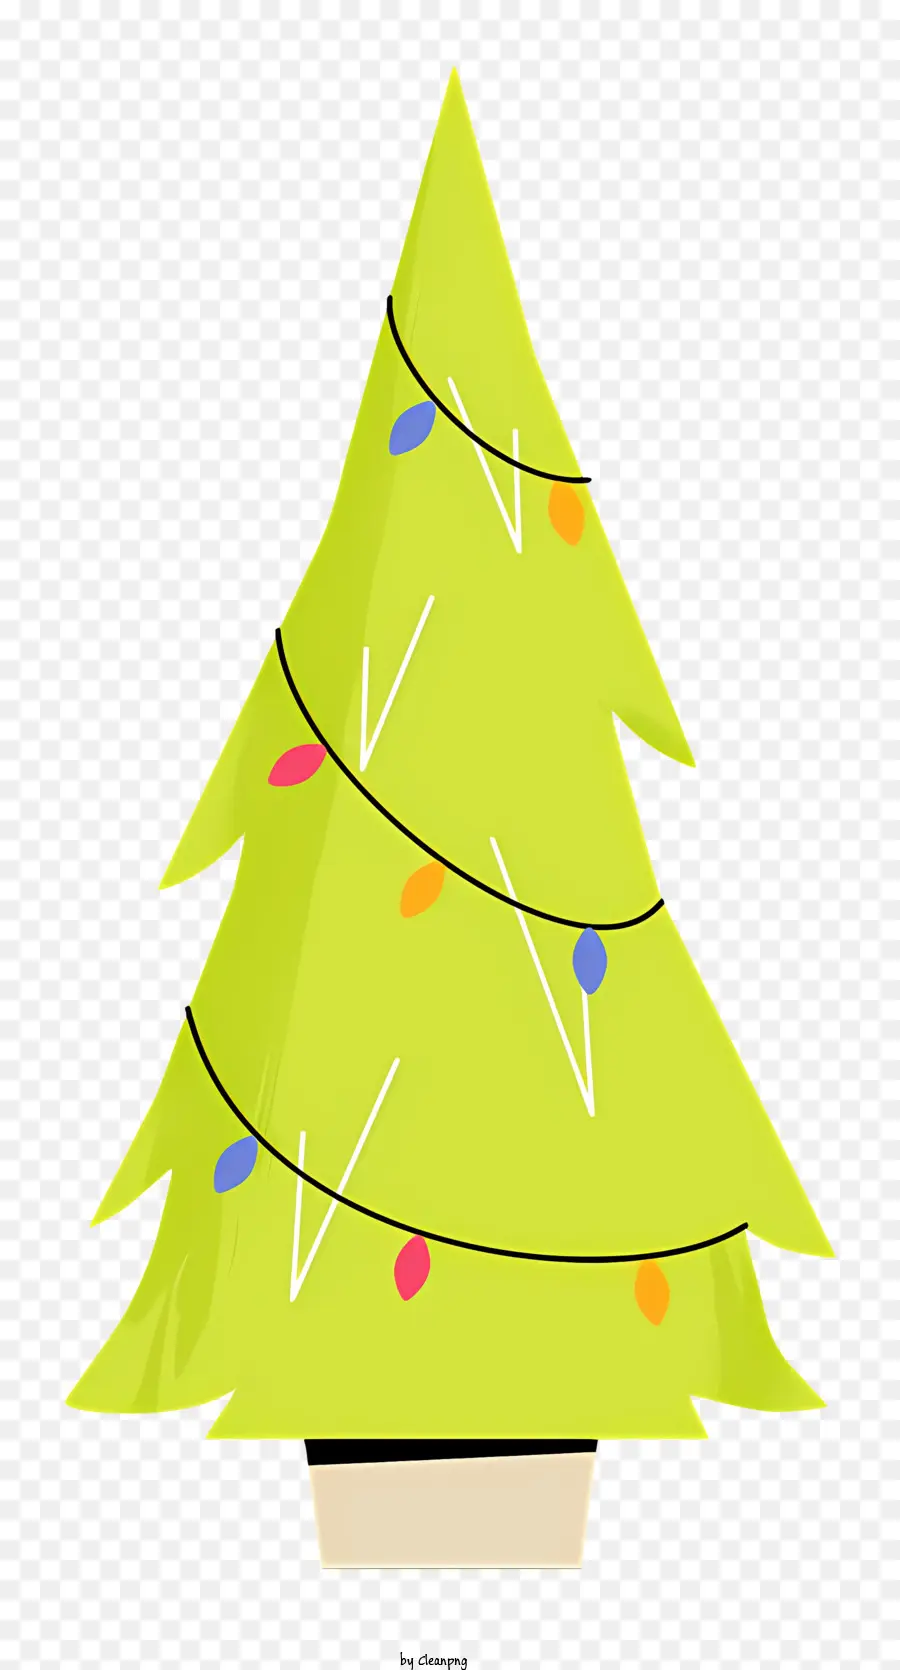 Kleiner Weihnachtsbaumgrüner Weihnachtsbaum mehrfarbige Lichter Wellenmuster Lichter Tischdekoration - Kleiner grüner Weihnachtsbaum mit farbenfrohen Lichtern